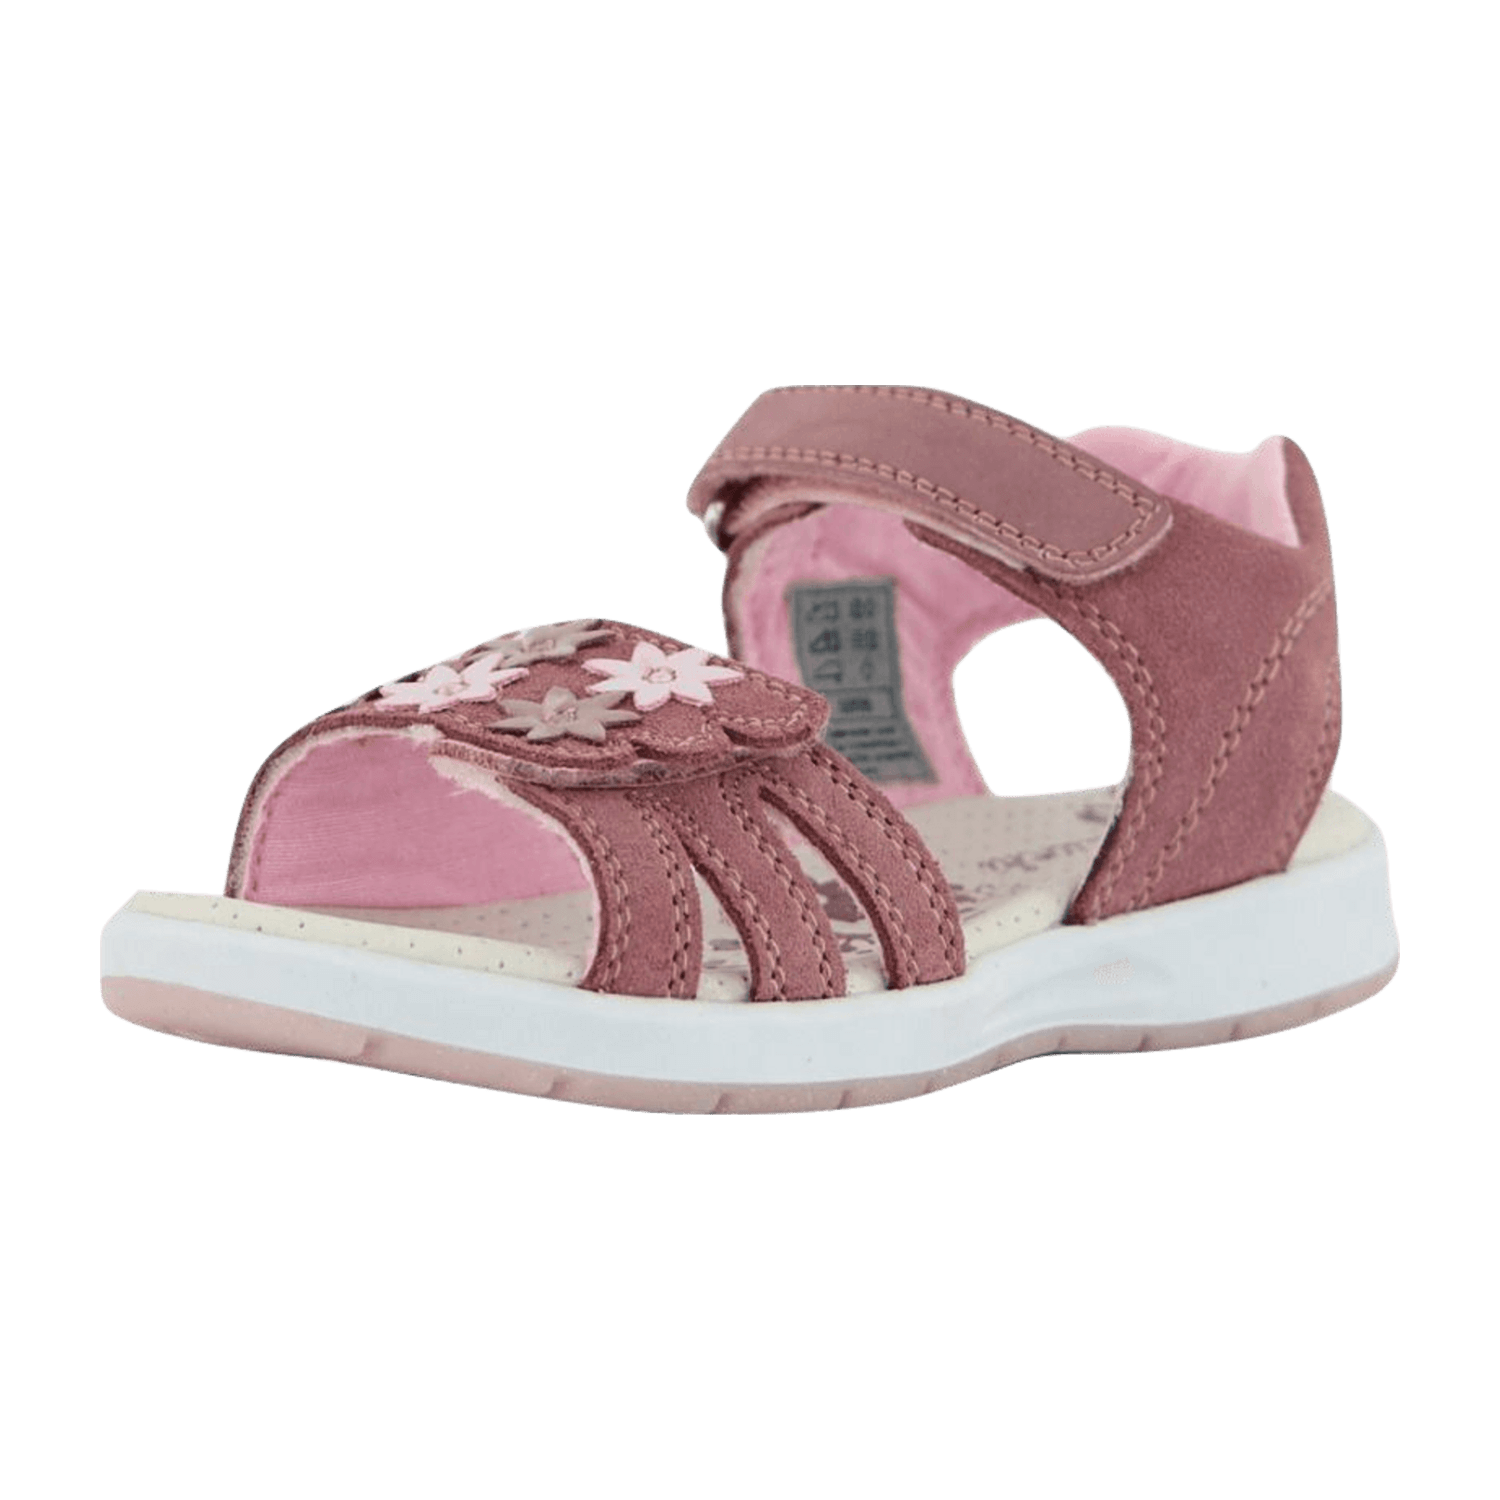 Lurchi Kinder Sandalen für kaufen Mädchen